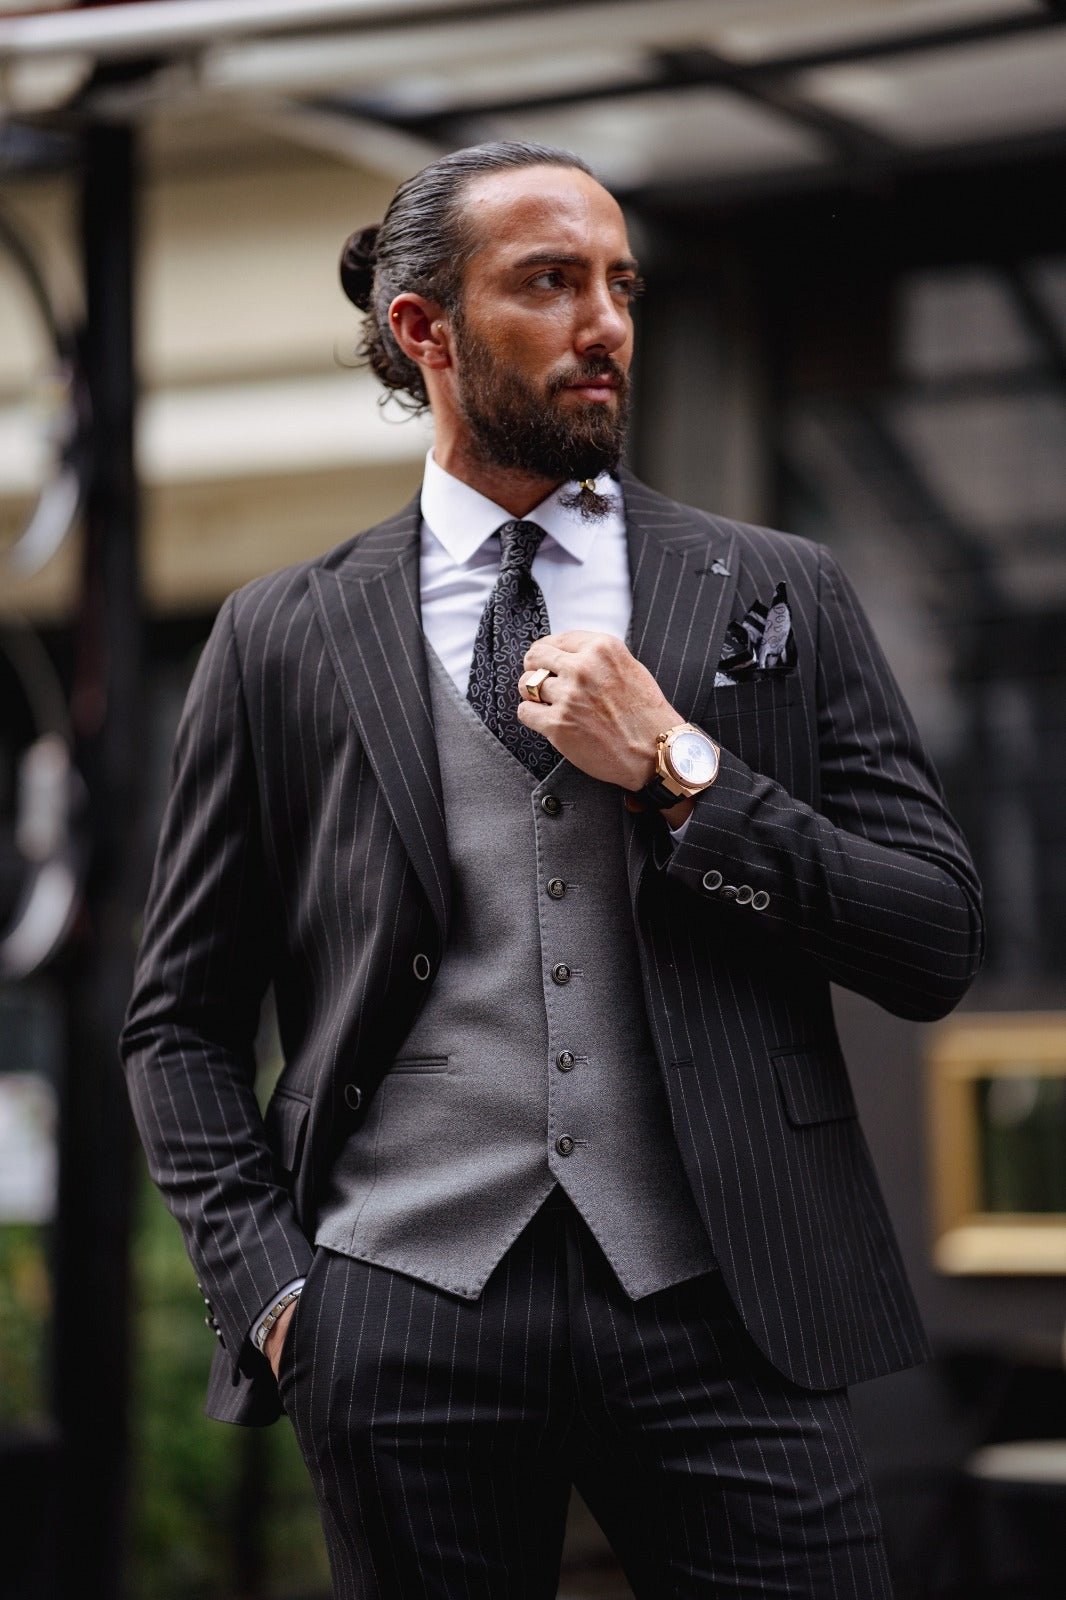 Paris Black Slim Fit Pinstripe Combination Suit